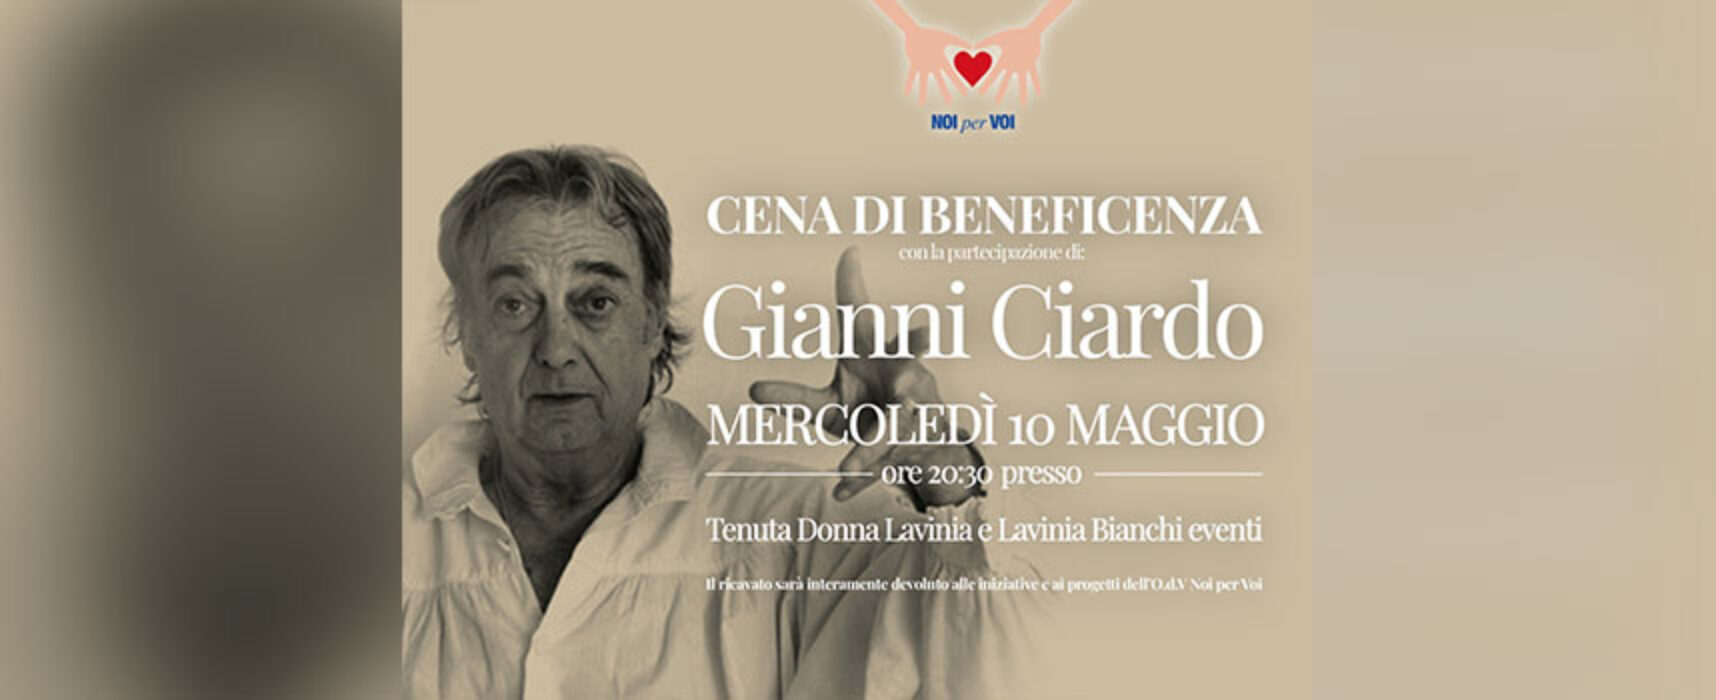 “Noi per Voi” organizza cena di beneficenza, Gianni Ciardo protagonista